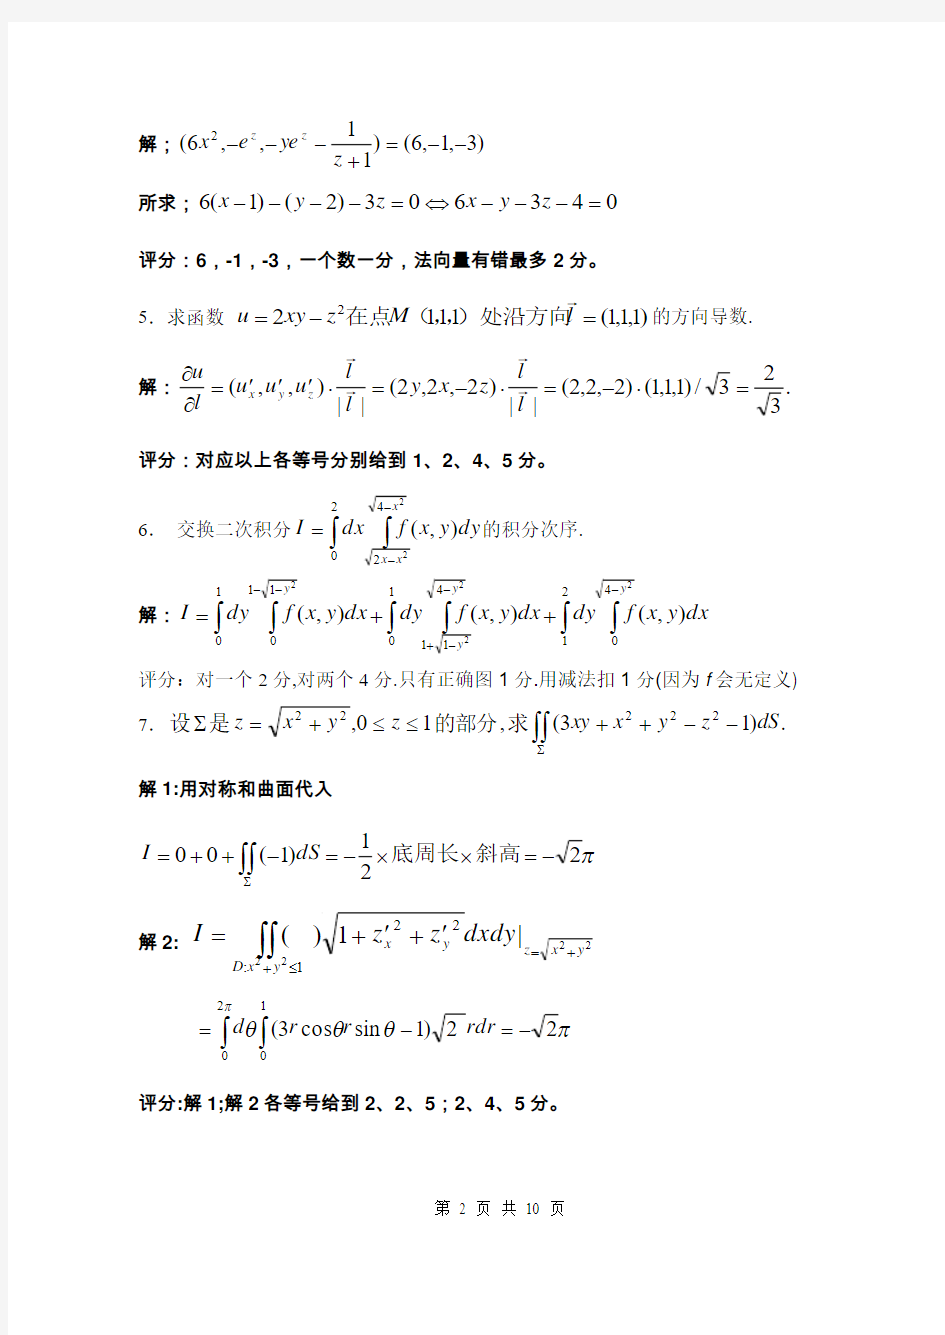 北京交通大学第二学期〈微积分(b)ii〉期末考试试卷(a)及其答案.